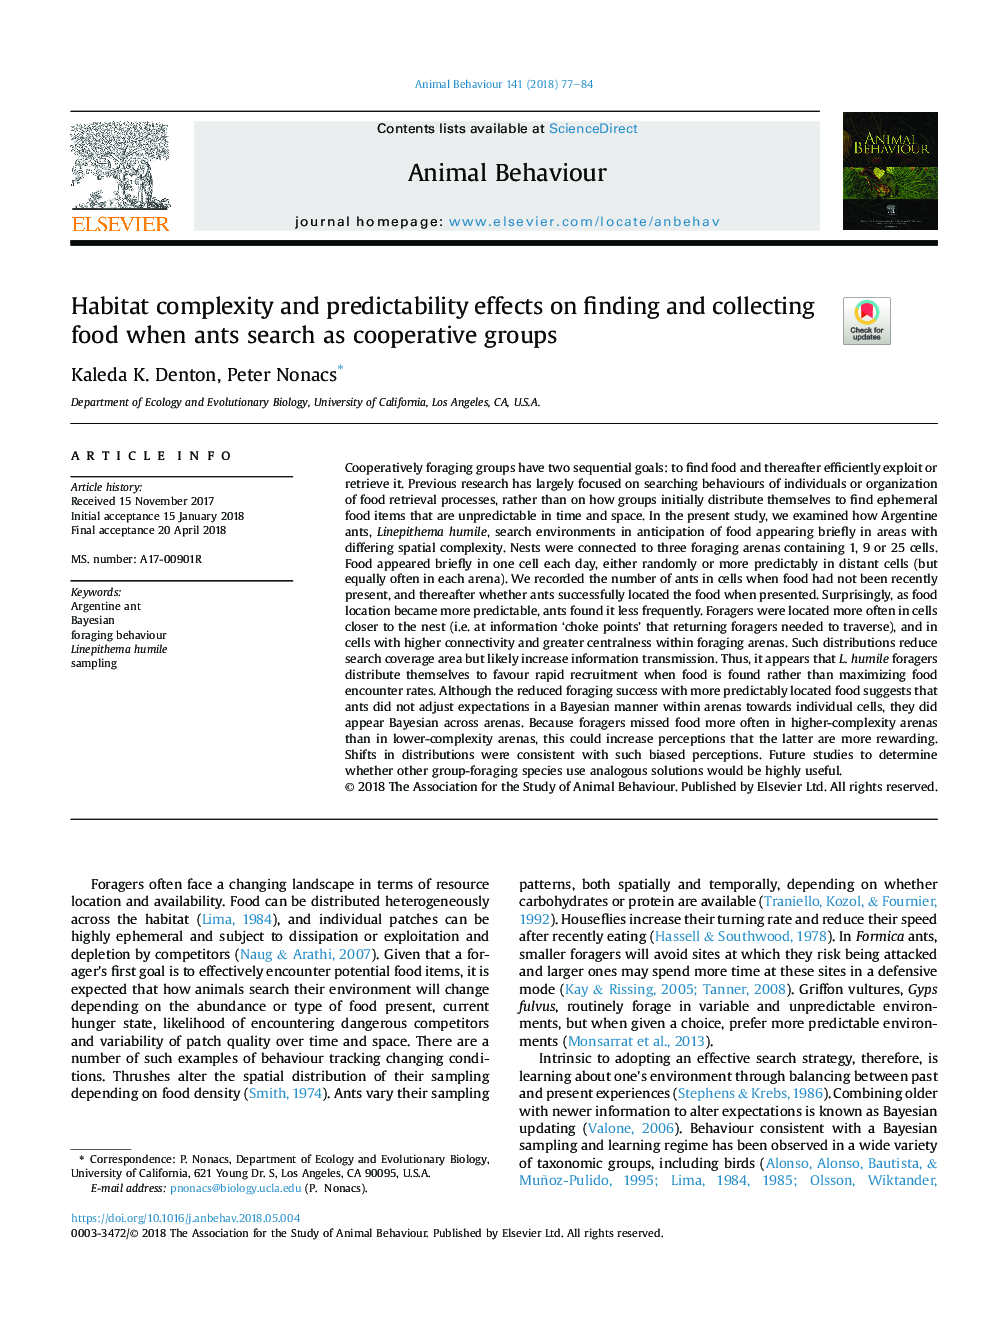 پیچیدگی و قابلیت پیش بینی جاذبه در یافتن و جمع آوری غذا زمانی که مورچه ها به عنوان گروه های همکاری جستجو می کنند 